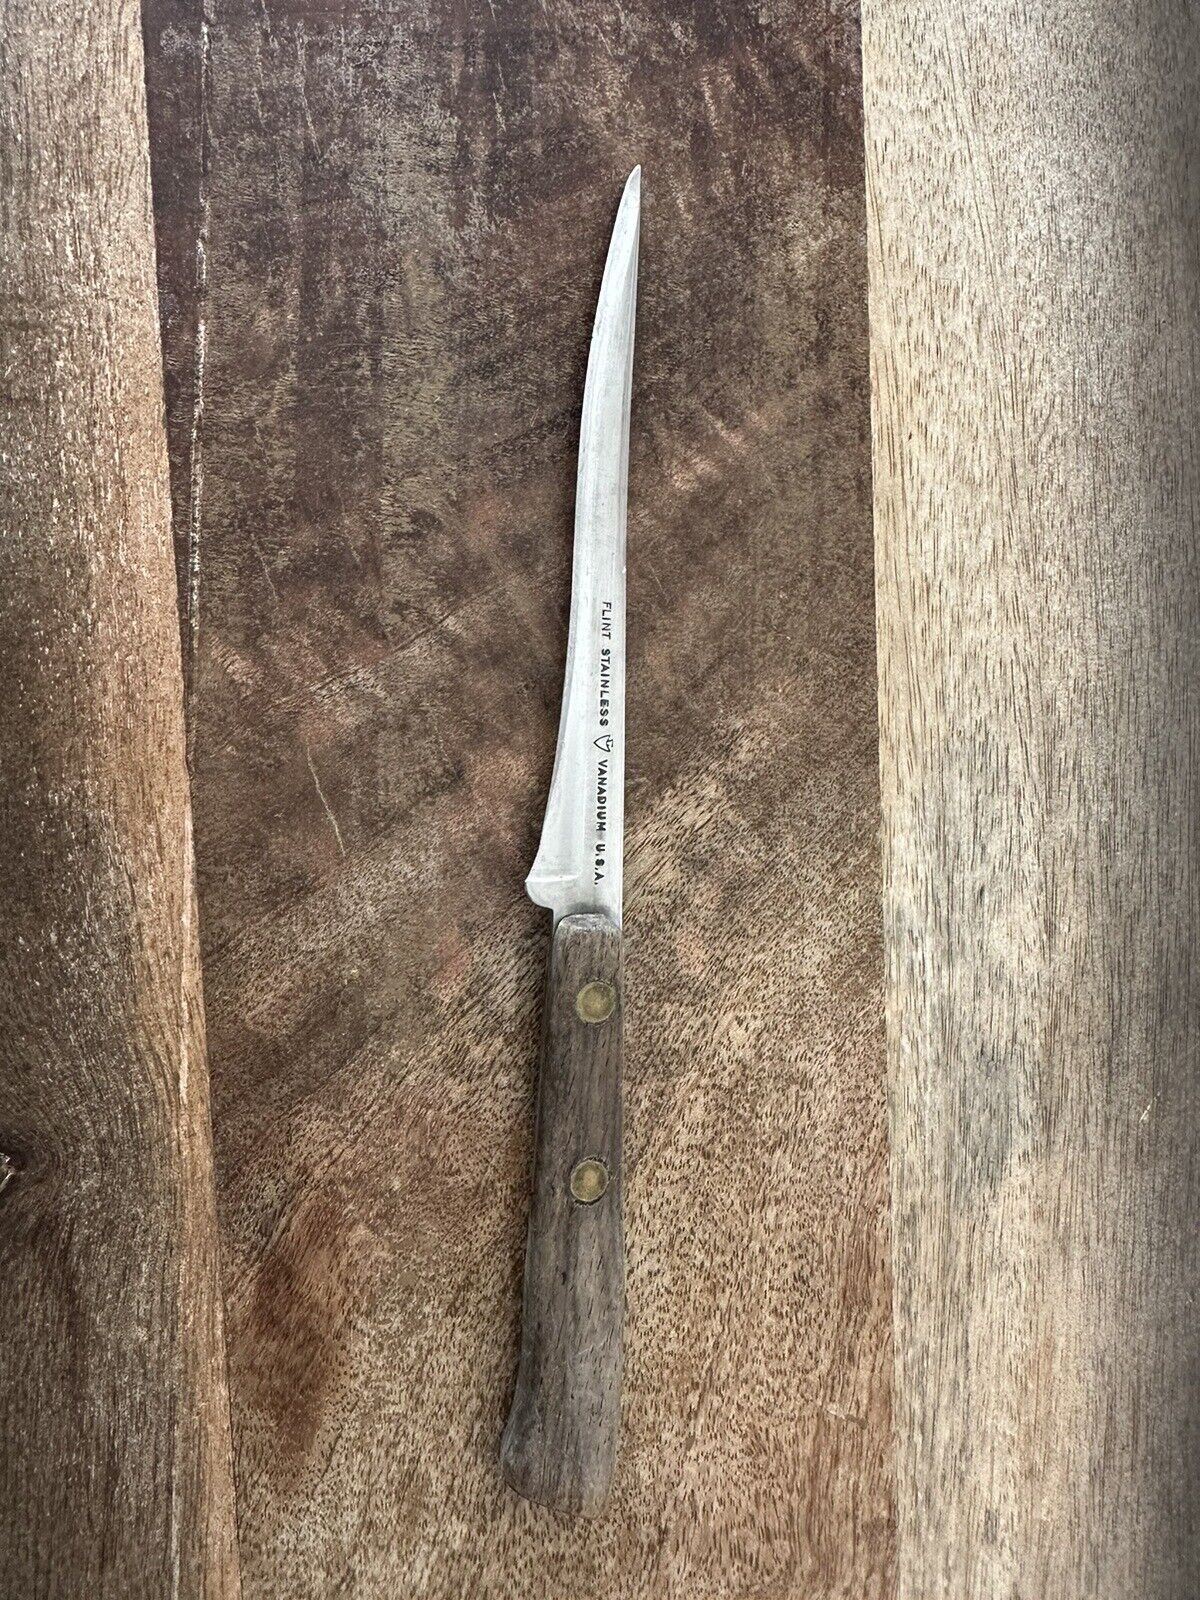 Flint Arrowhead Stainless Vanadium USA Knife 4.5” Blade Wood Grip 8” L Vintage